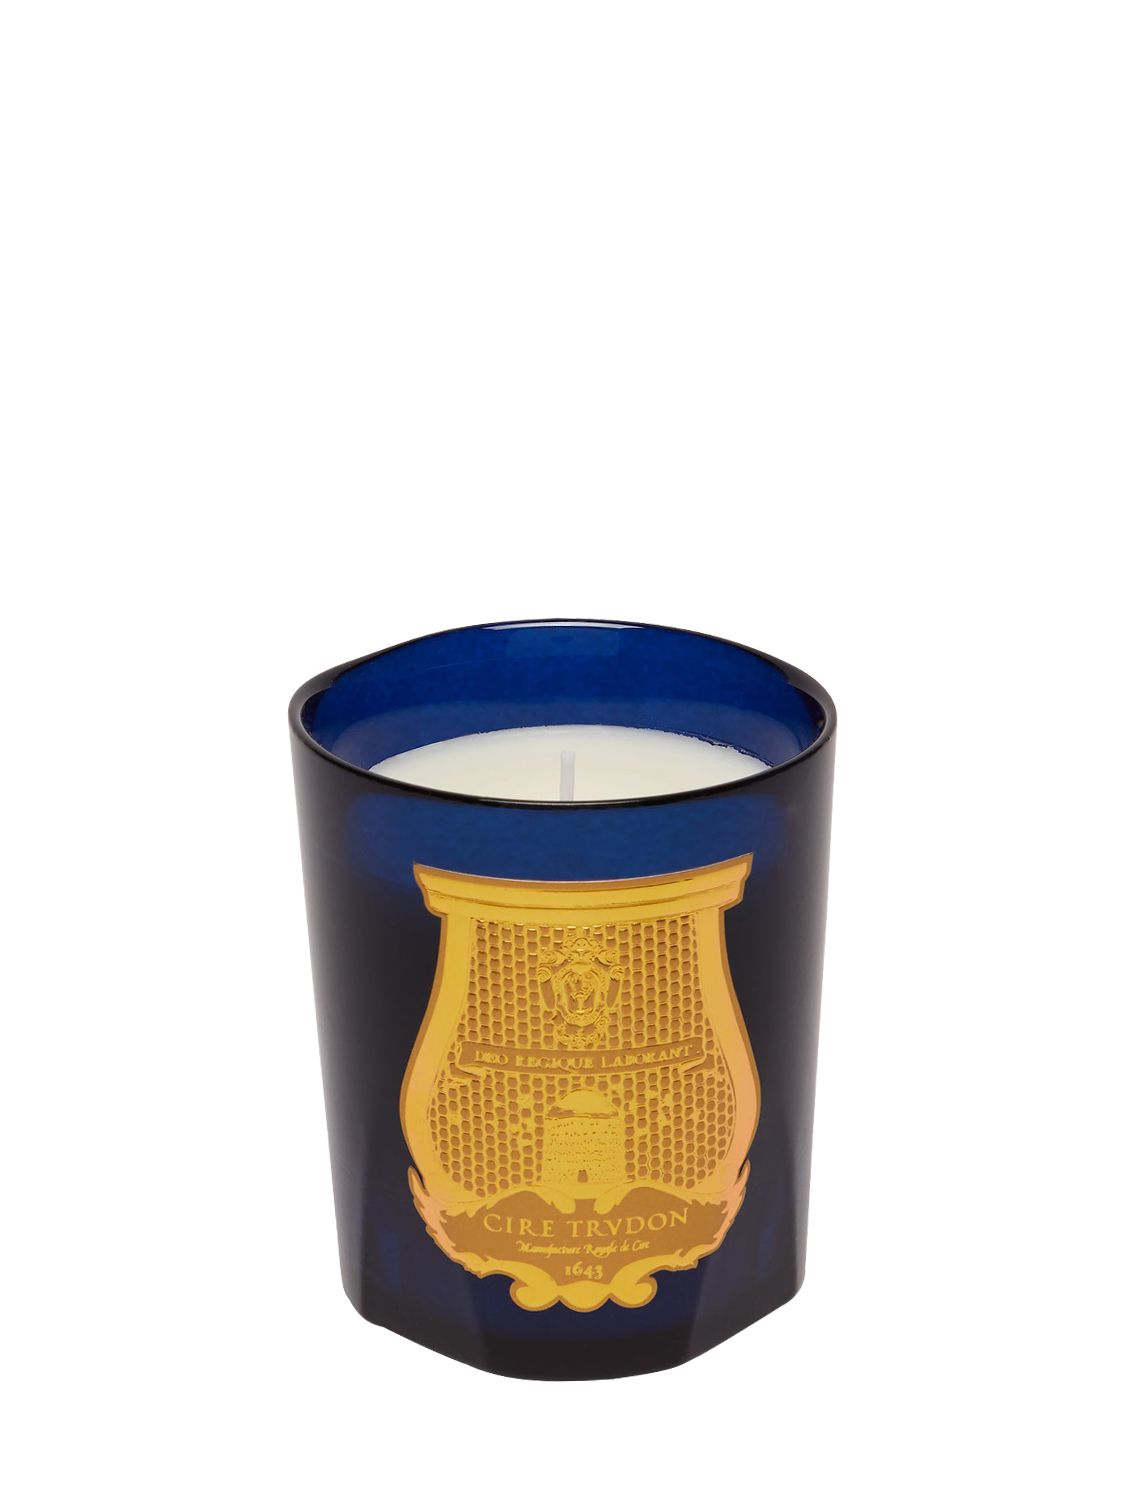 Trudon Reggio Classic香氛蜡烛 In Blue,gold